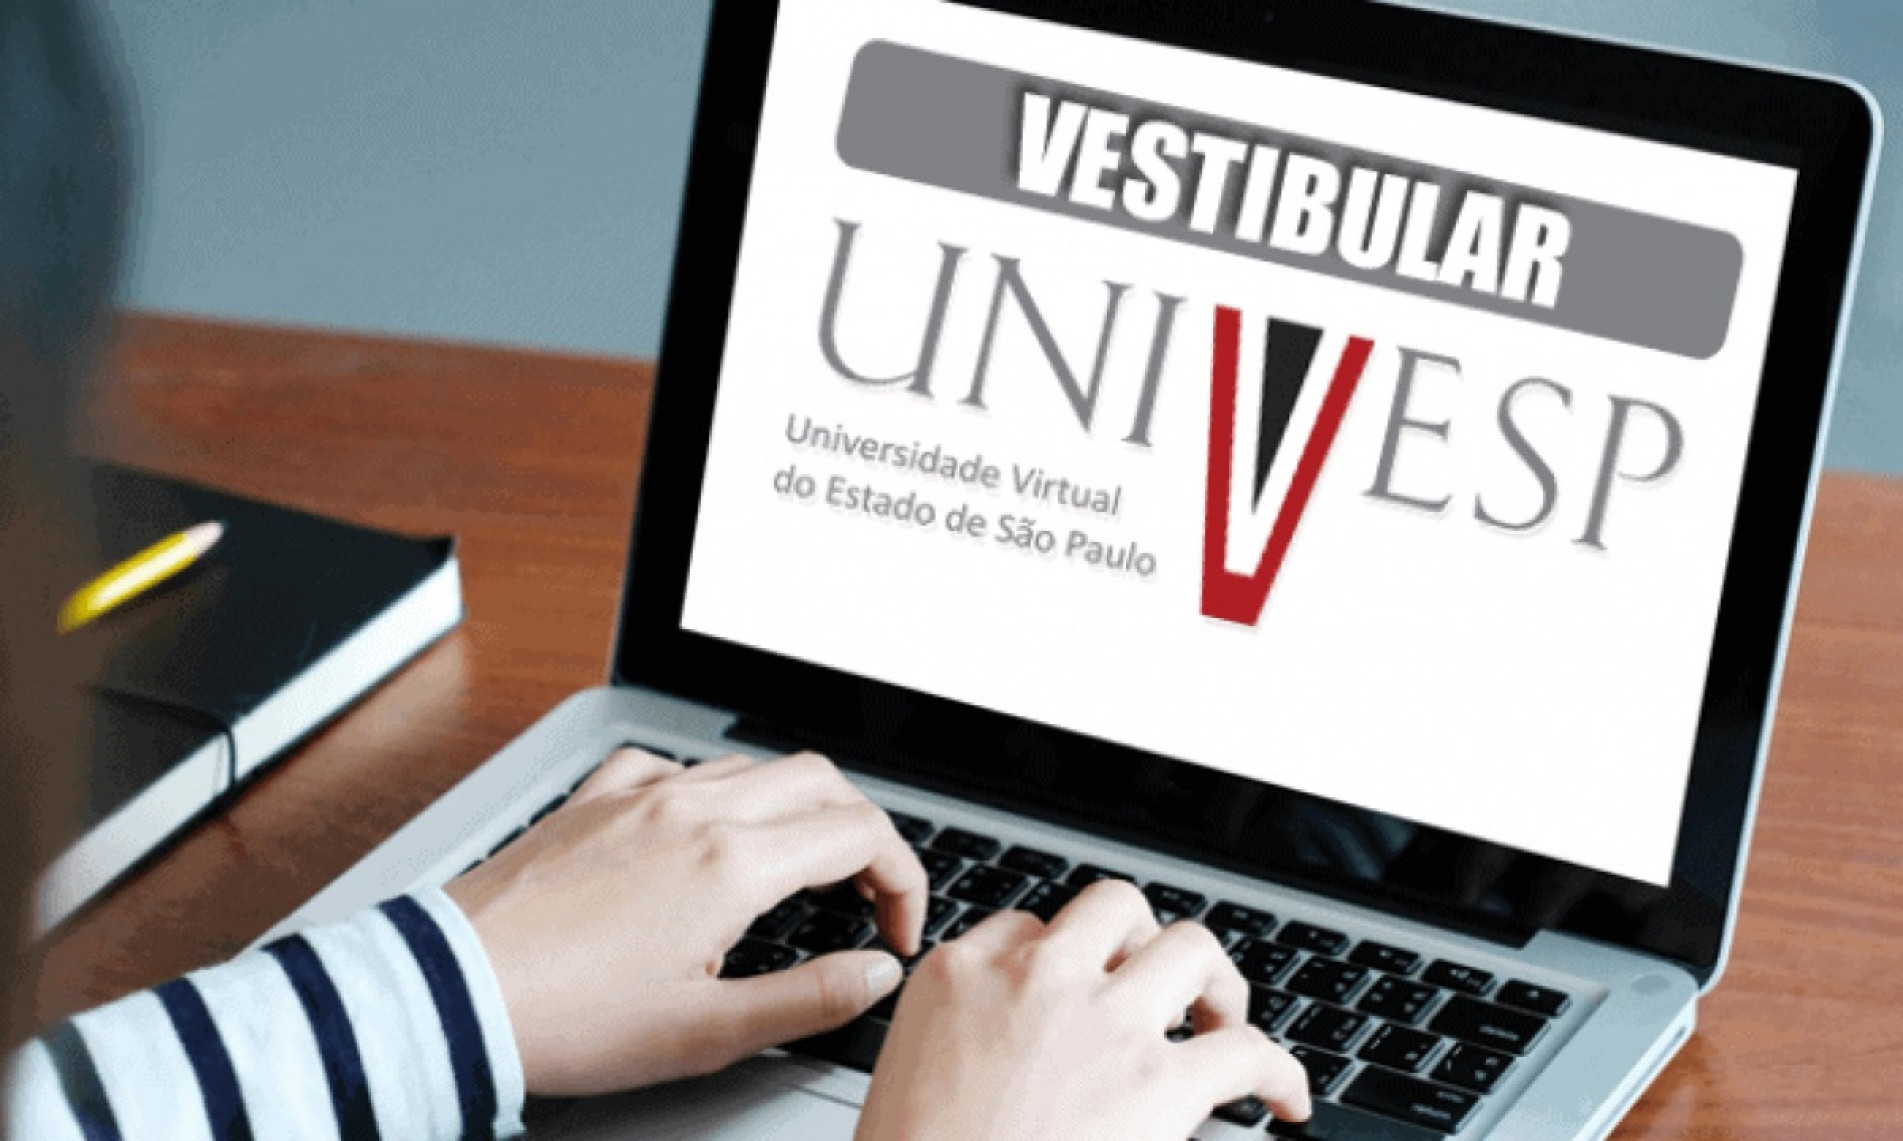 Inscrições terminam às 21h do dia 8 de abril e devem ser feitas pelo site vestibular.univesp.br